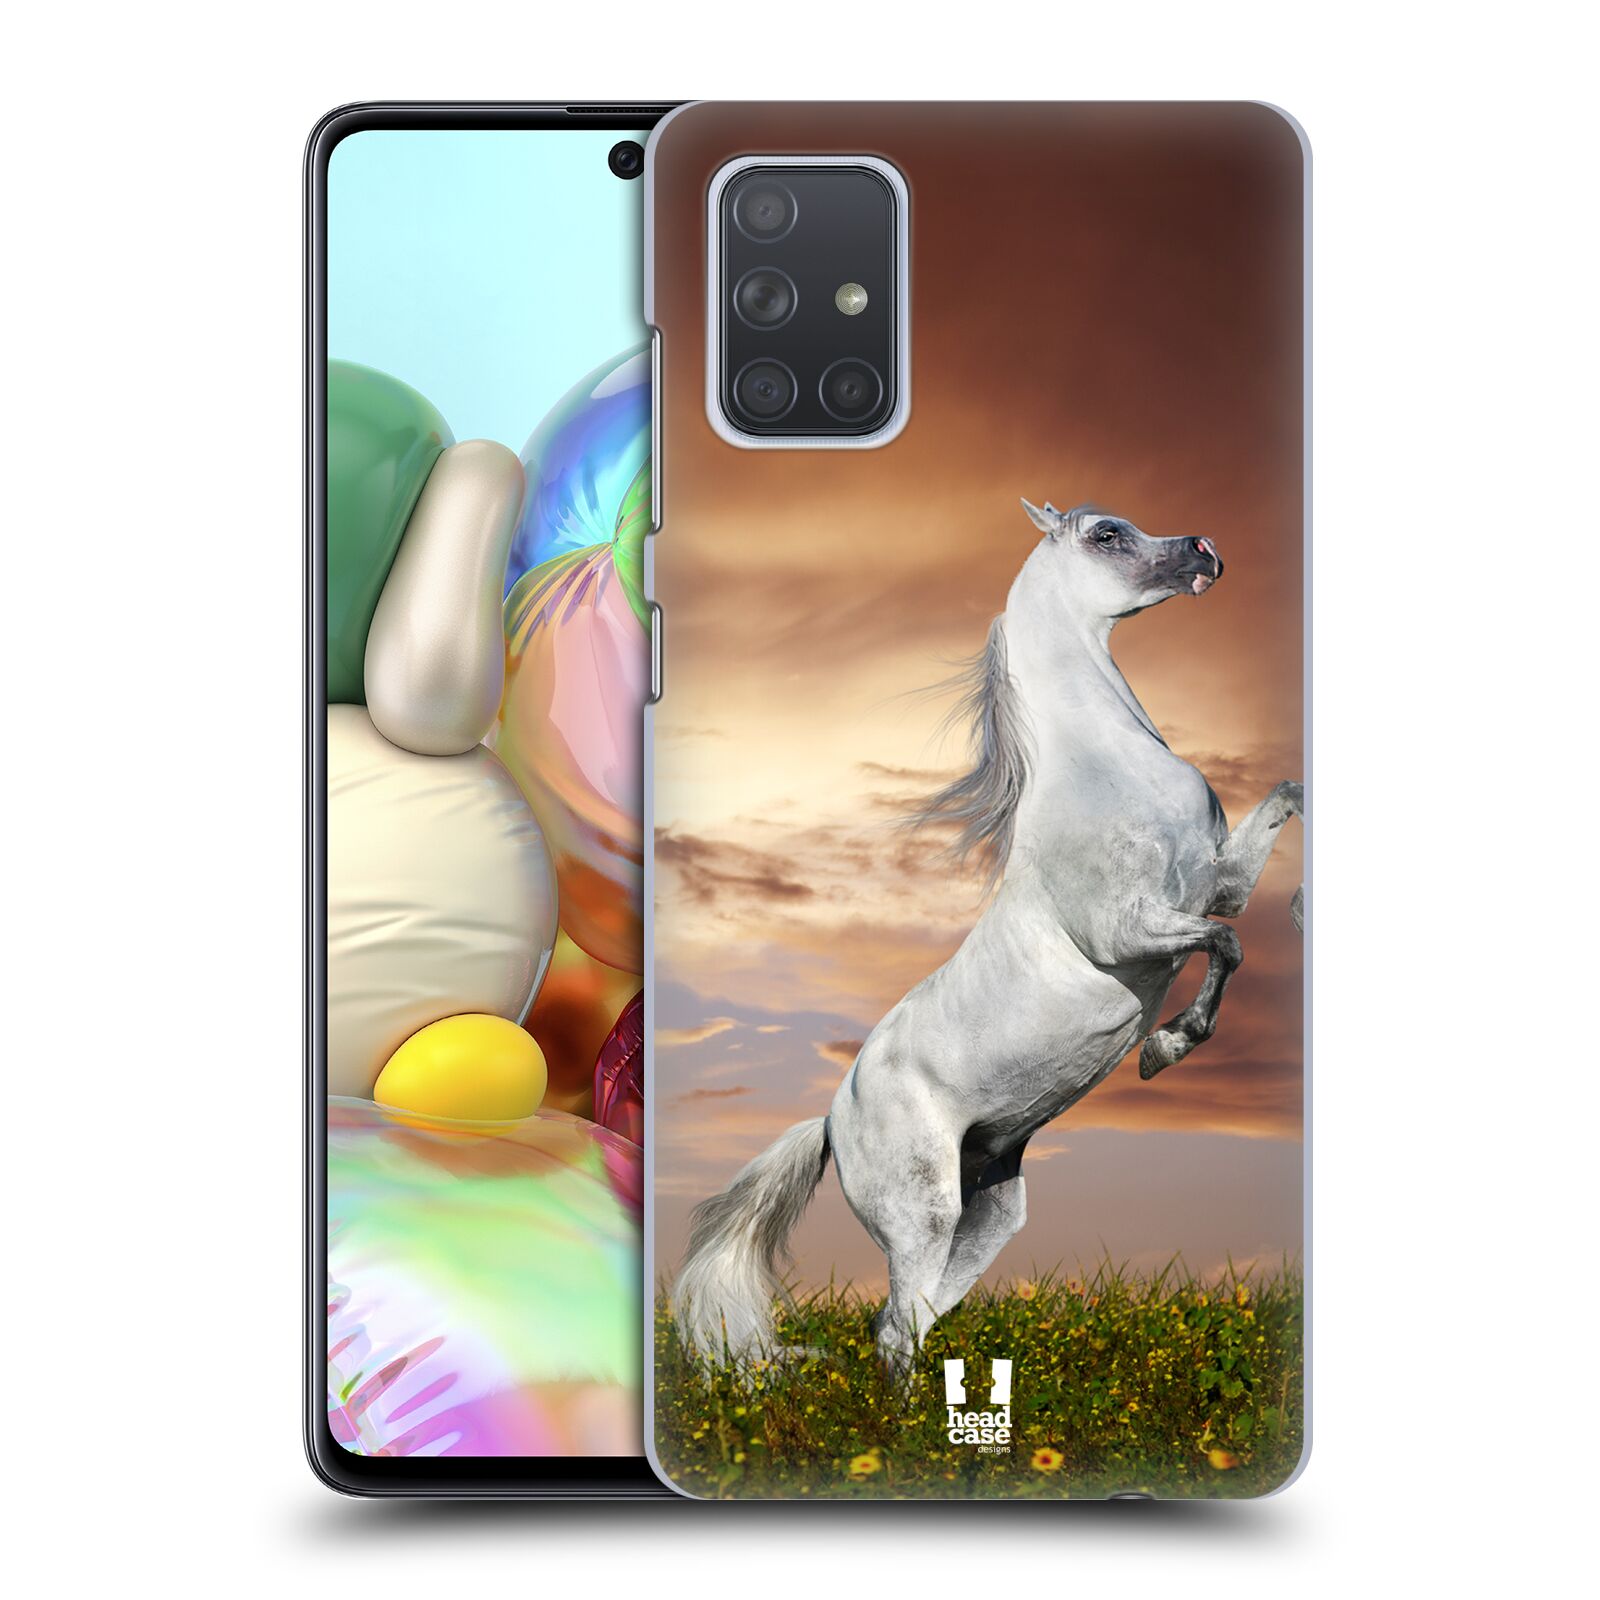 Zadní obal pro mobil Samsung Galaxy A71 - HEAD CASE - Svět zvířat divoký kůň